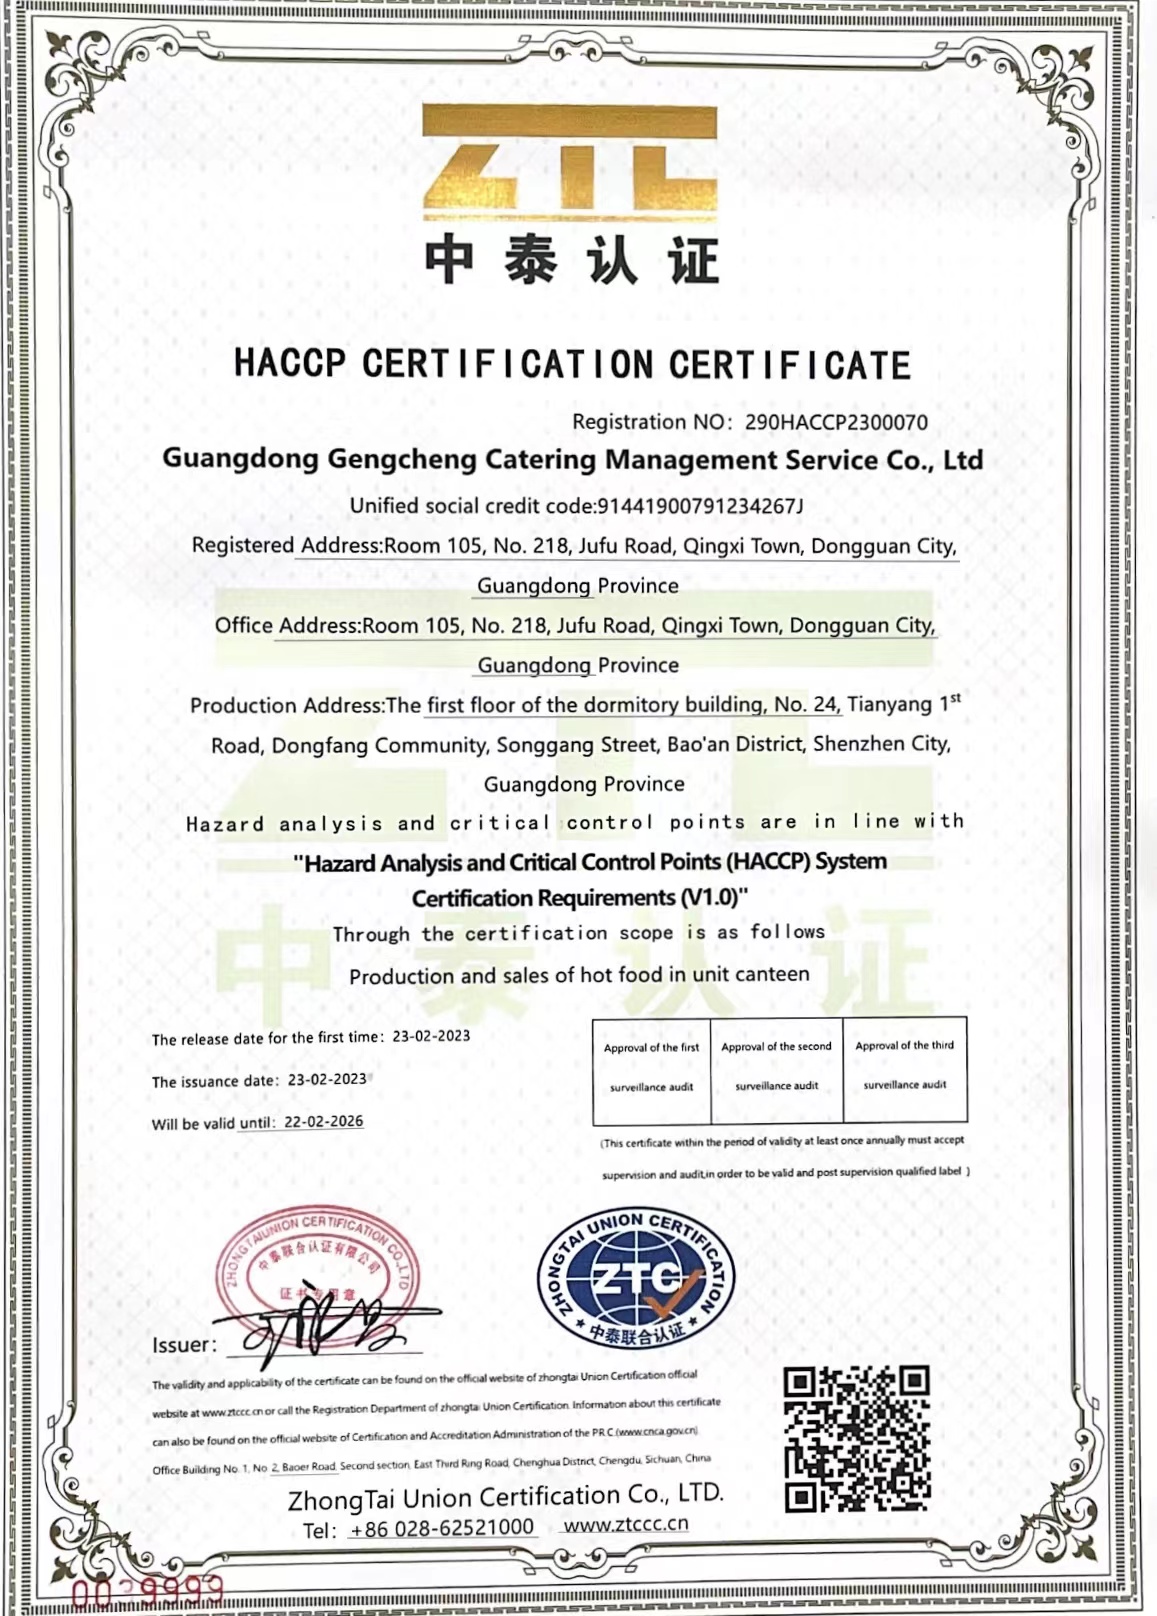 危害分析与关键控制点（HACCP）体系认证证书英文版